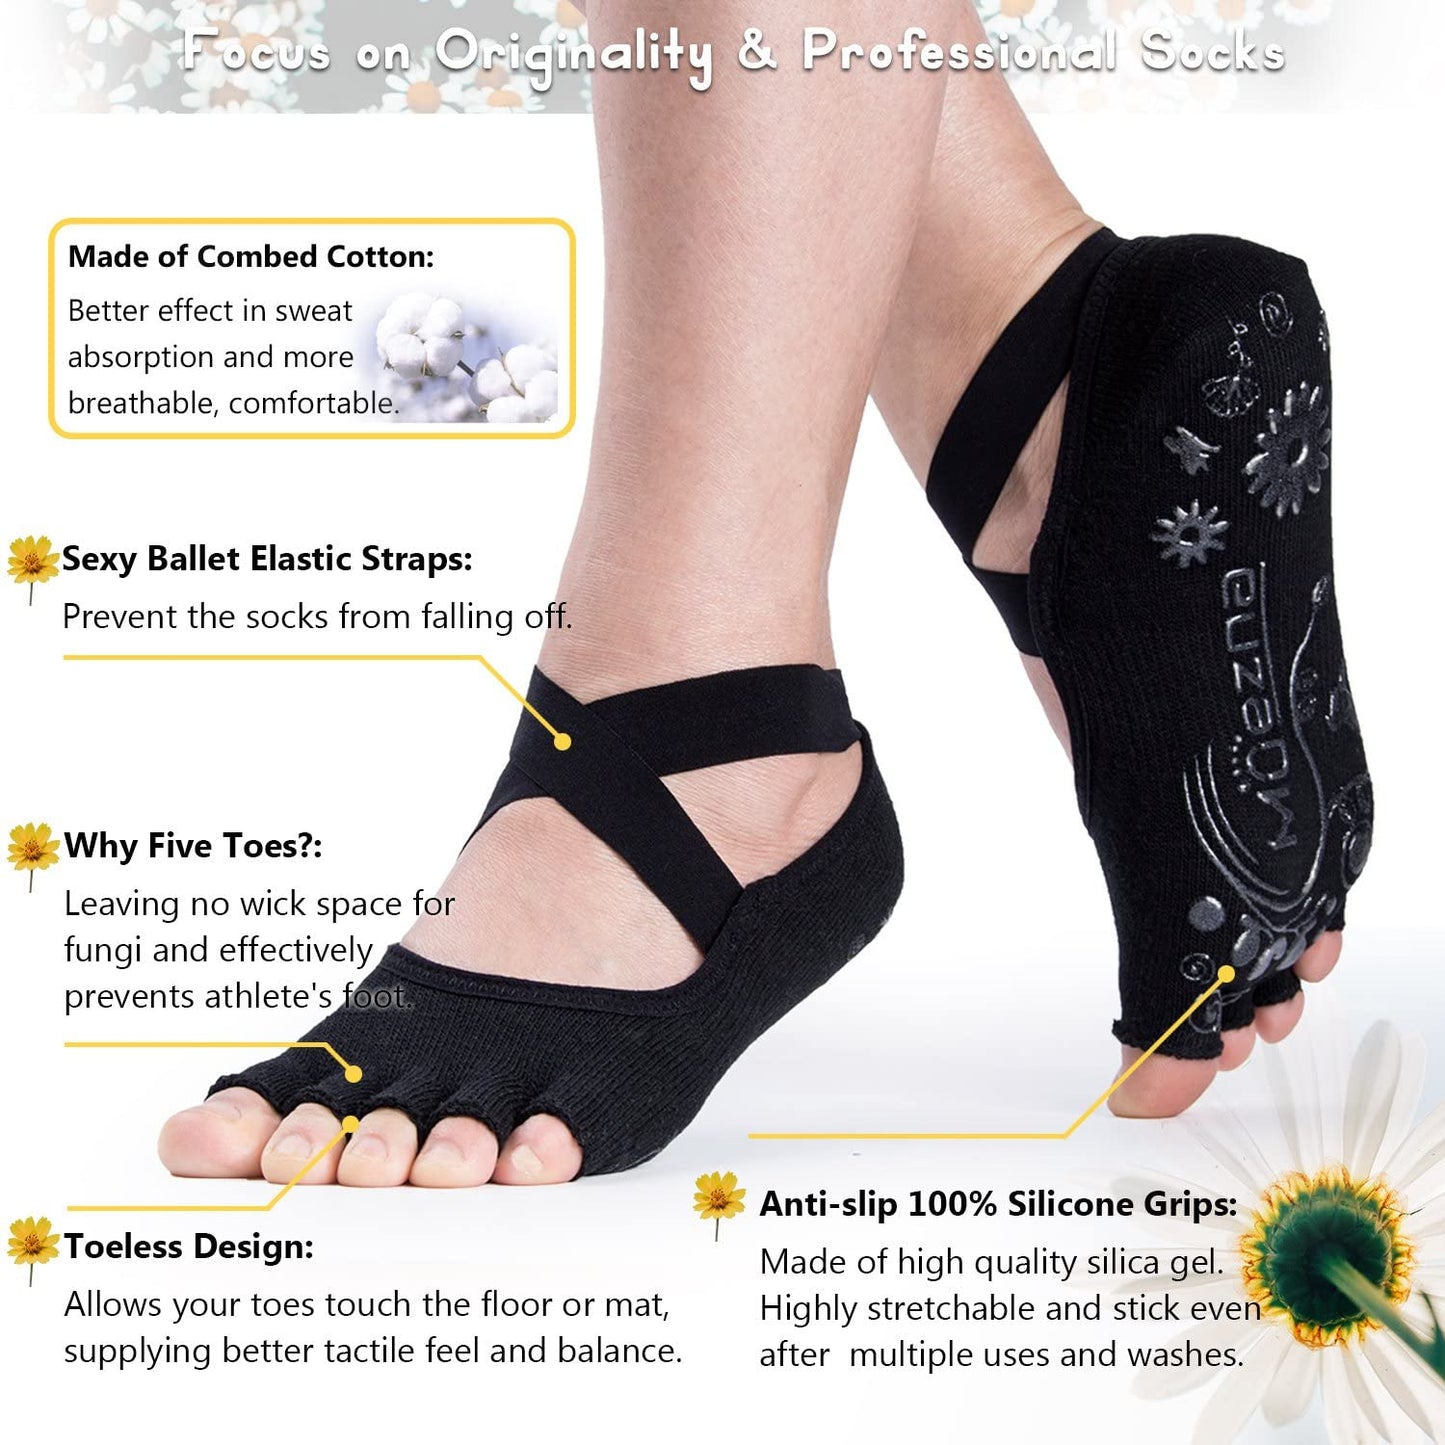 Muezna Non Slip Yoga Socks for Women, Toeless Anti-Skid Pilates, Barre, Ballet, Bikram Workout Socks with Grips - (For 8 piece(s))